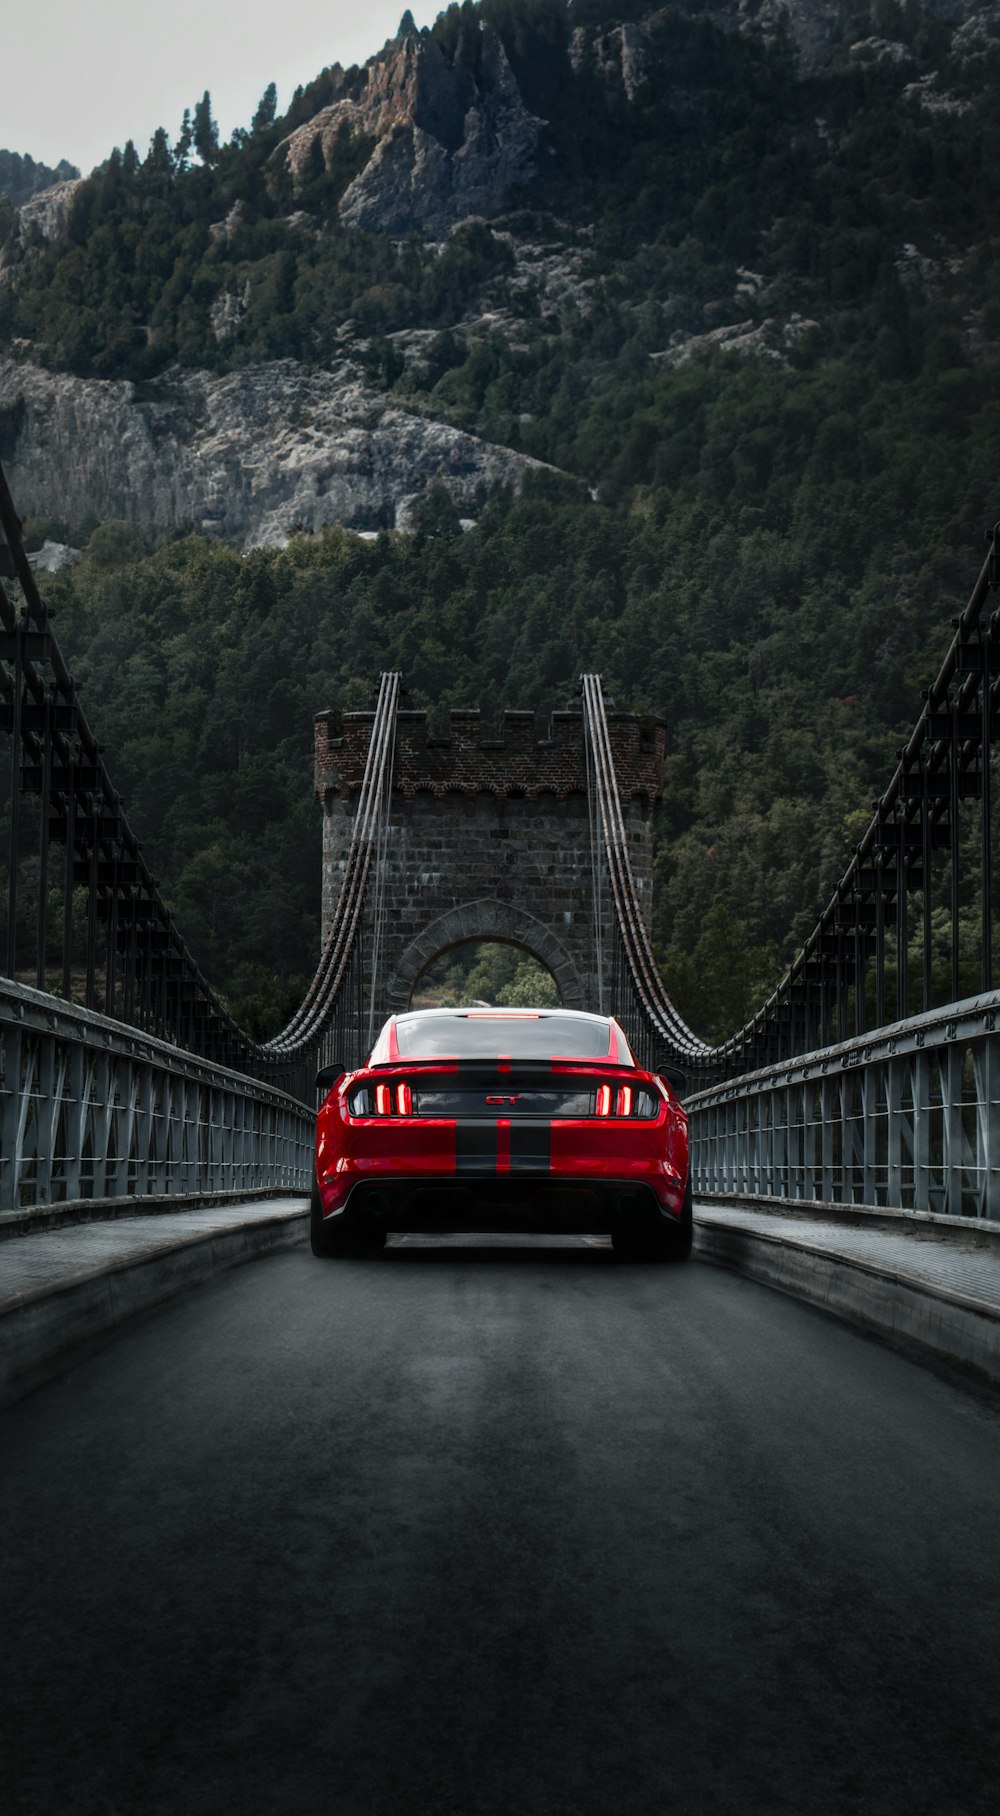 Ein roter Sportwagen fährt über eine Brücke